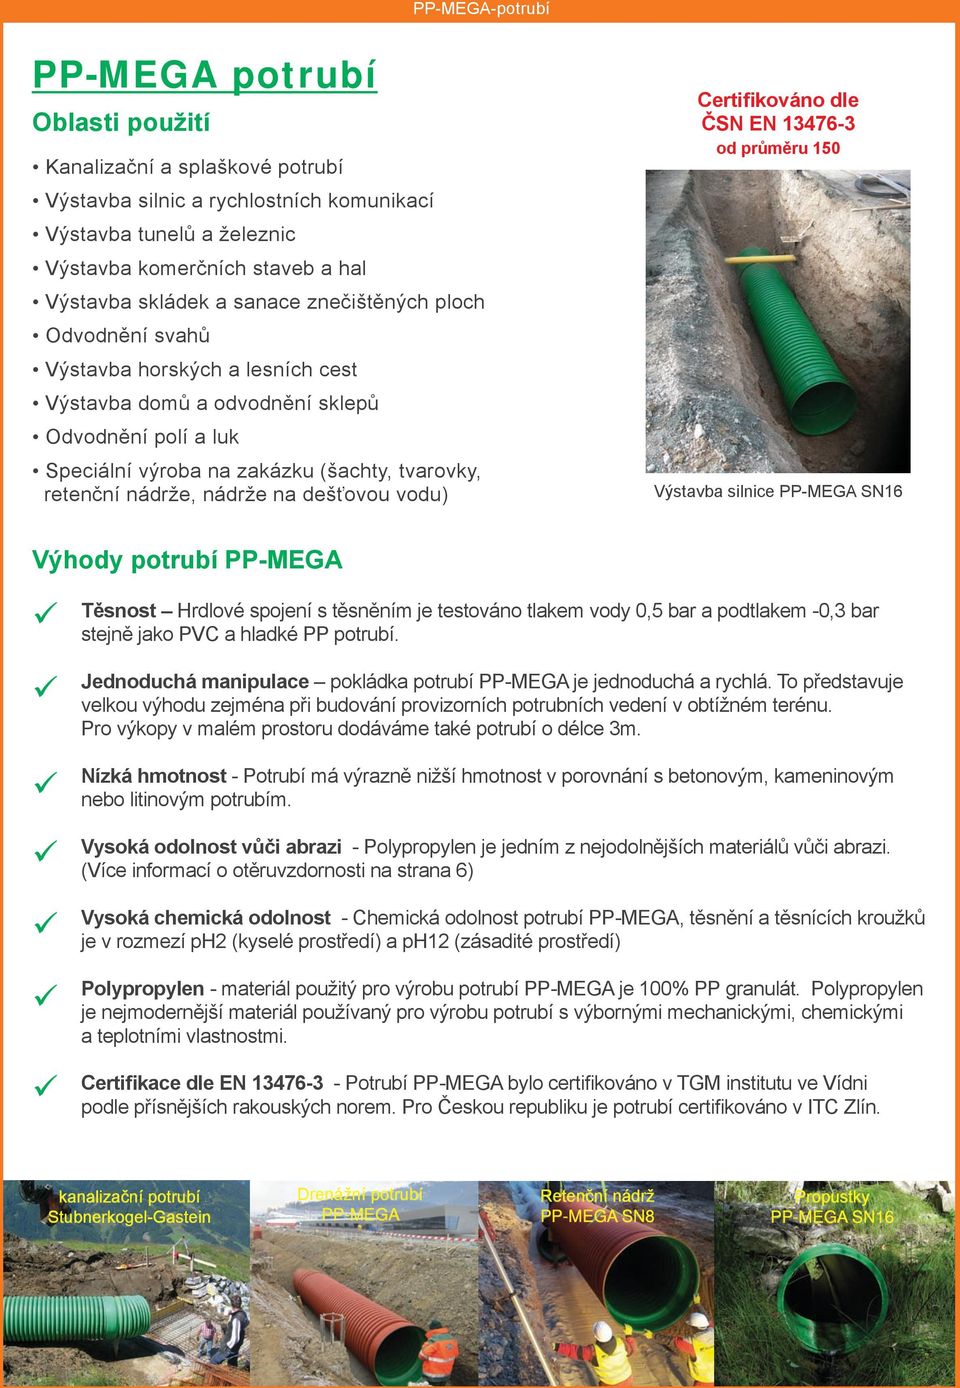 nádrže na dešťovou vodu) Certifikováno dle ČSN EN 13476-3 od průměru 150 Výstavba silnice PP-MEGA SN16 Výhody potrubí PP-MEGA Těsnost Hrdlové spojení s těsněním je testováno tlakem vody 0,5 bar a